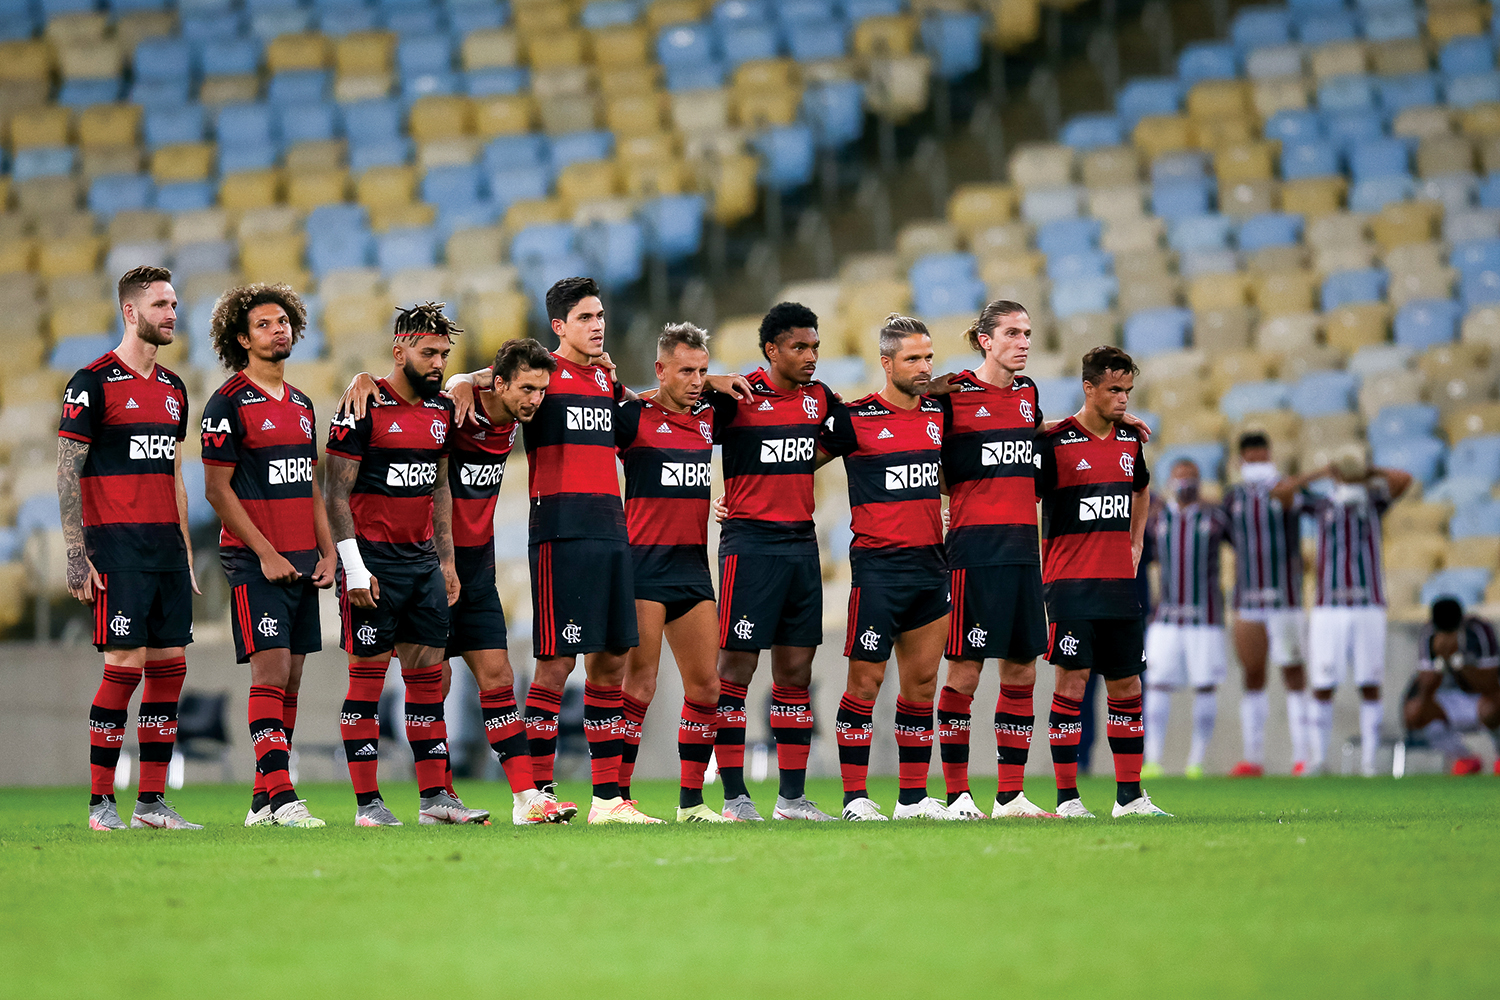 Confira como foi a transmissão da JP do jogo entre Flamengo e São